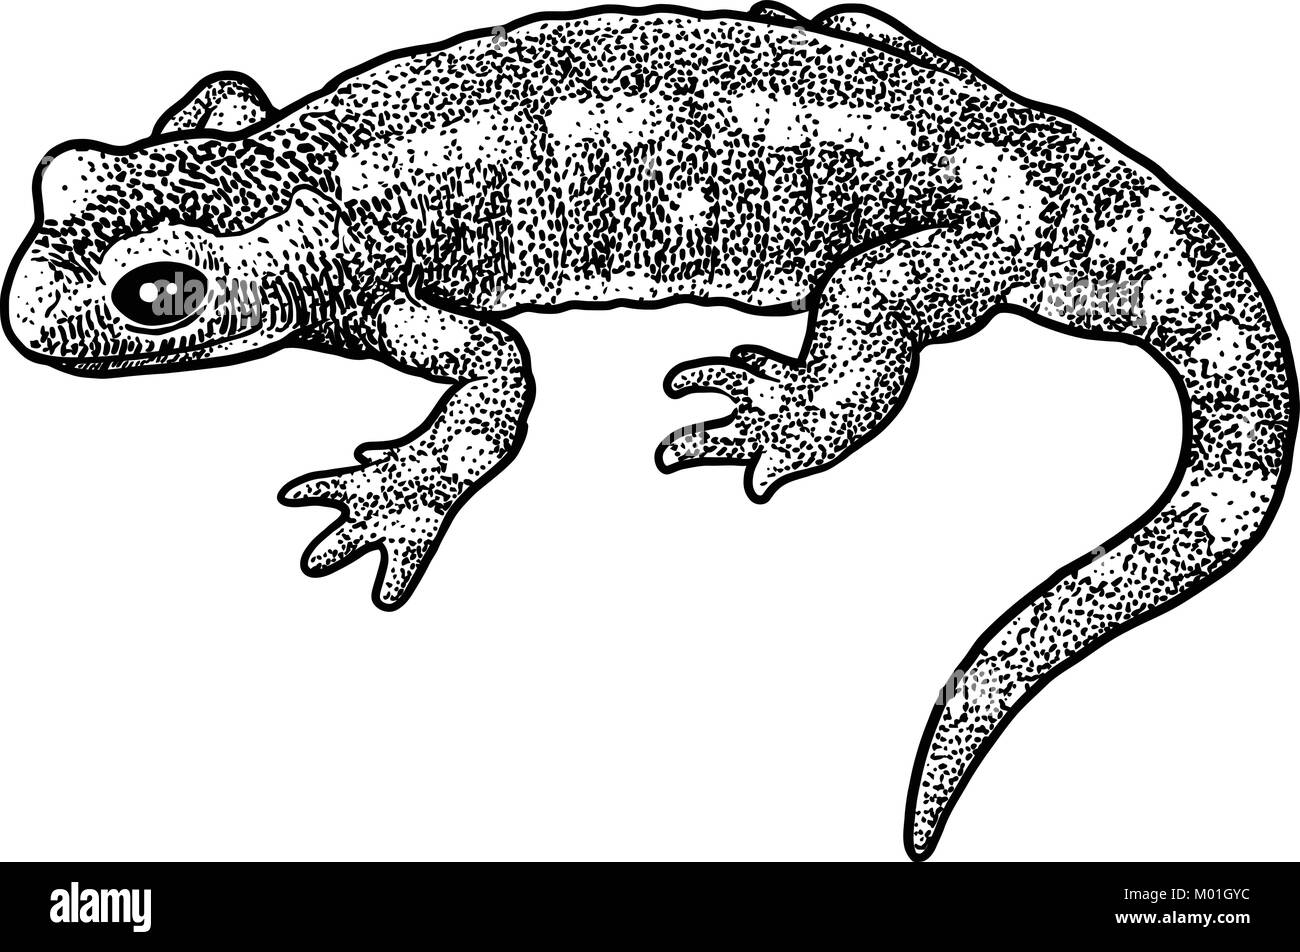 Fire salamander illustration, dessin, gravure, encre, dessin au trait, vector Illustration de Vecteur